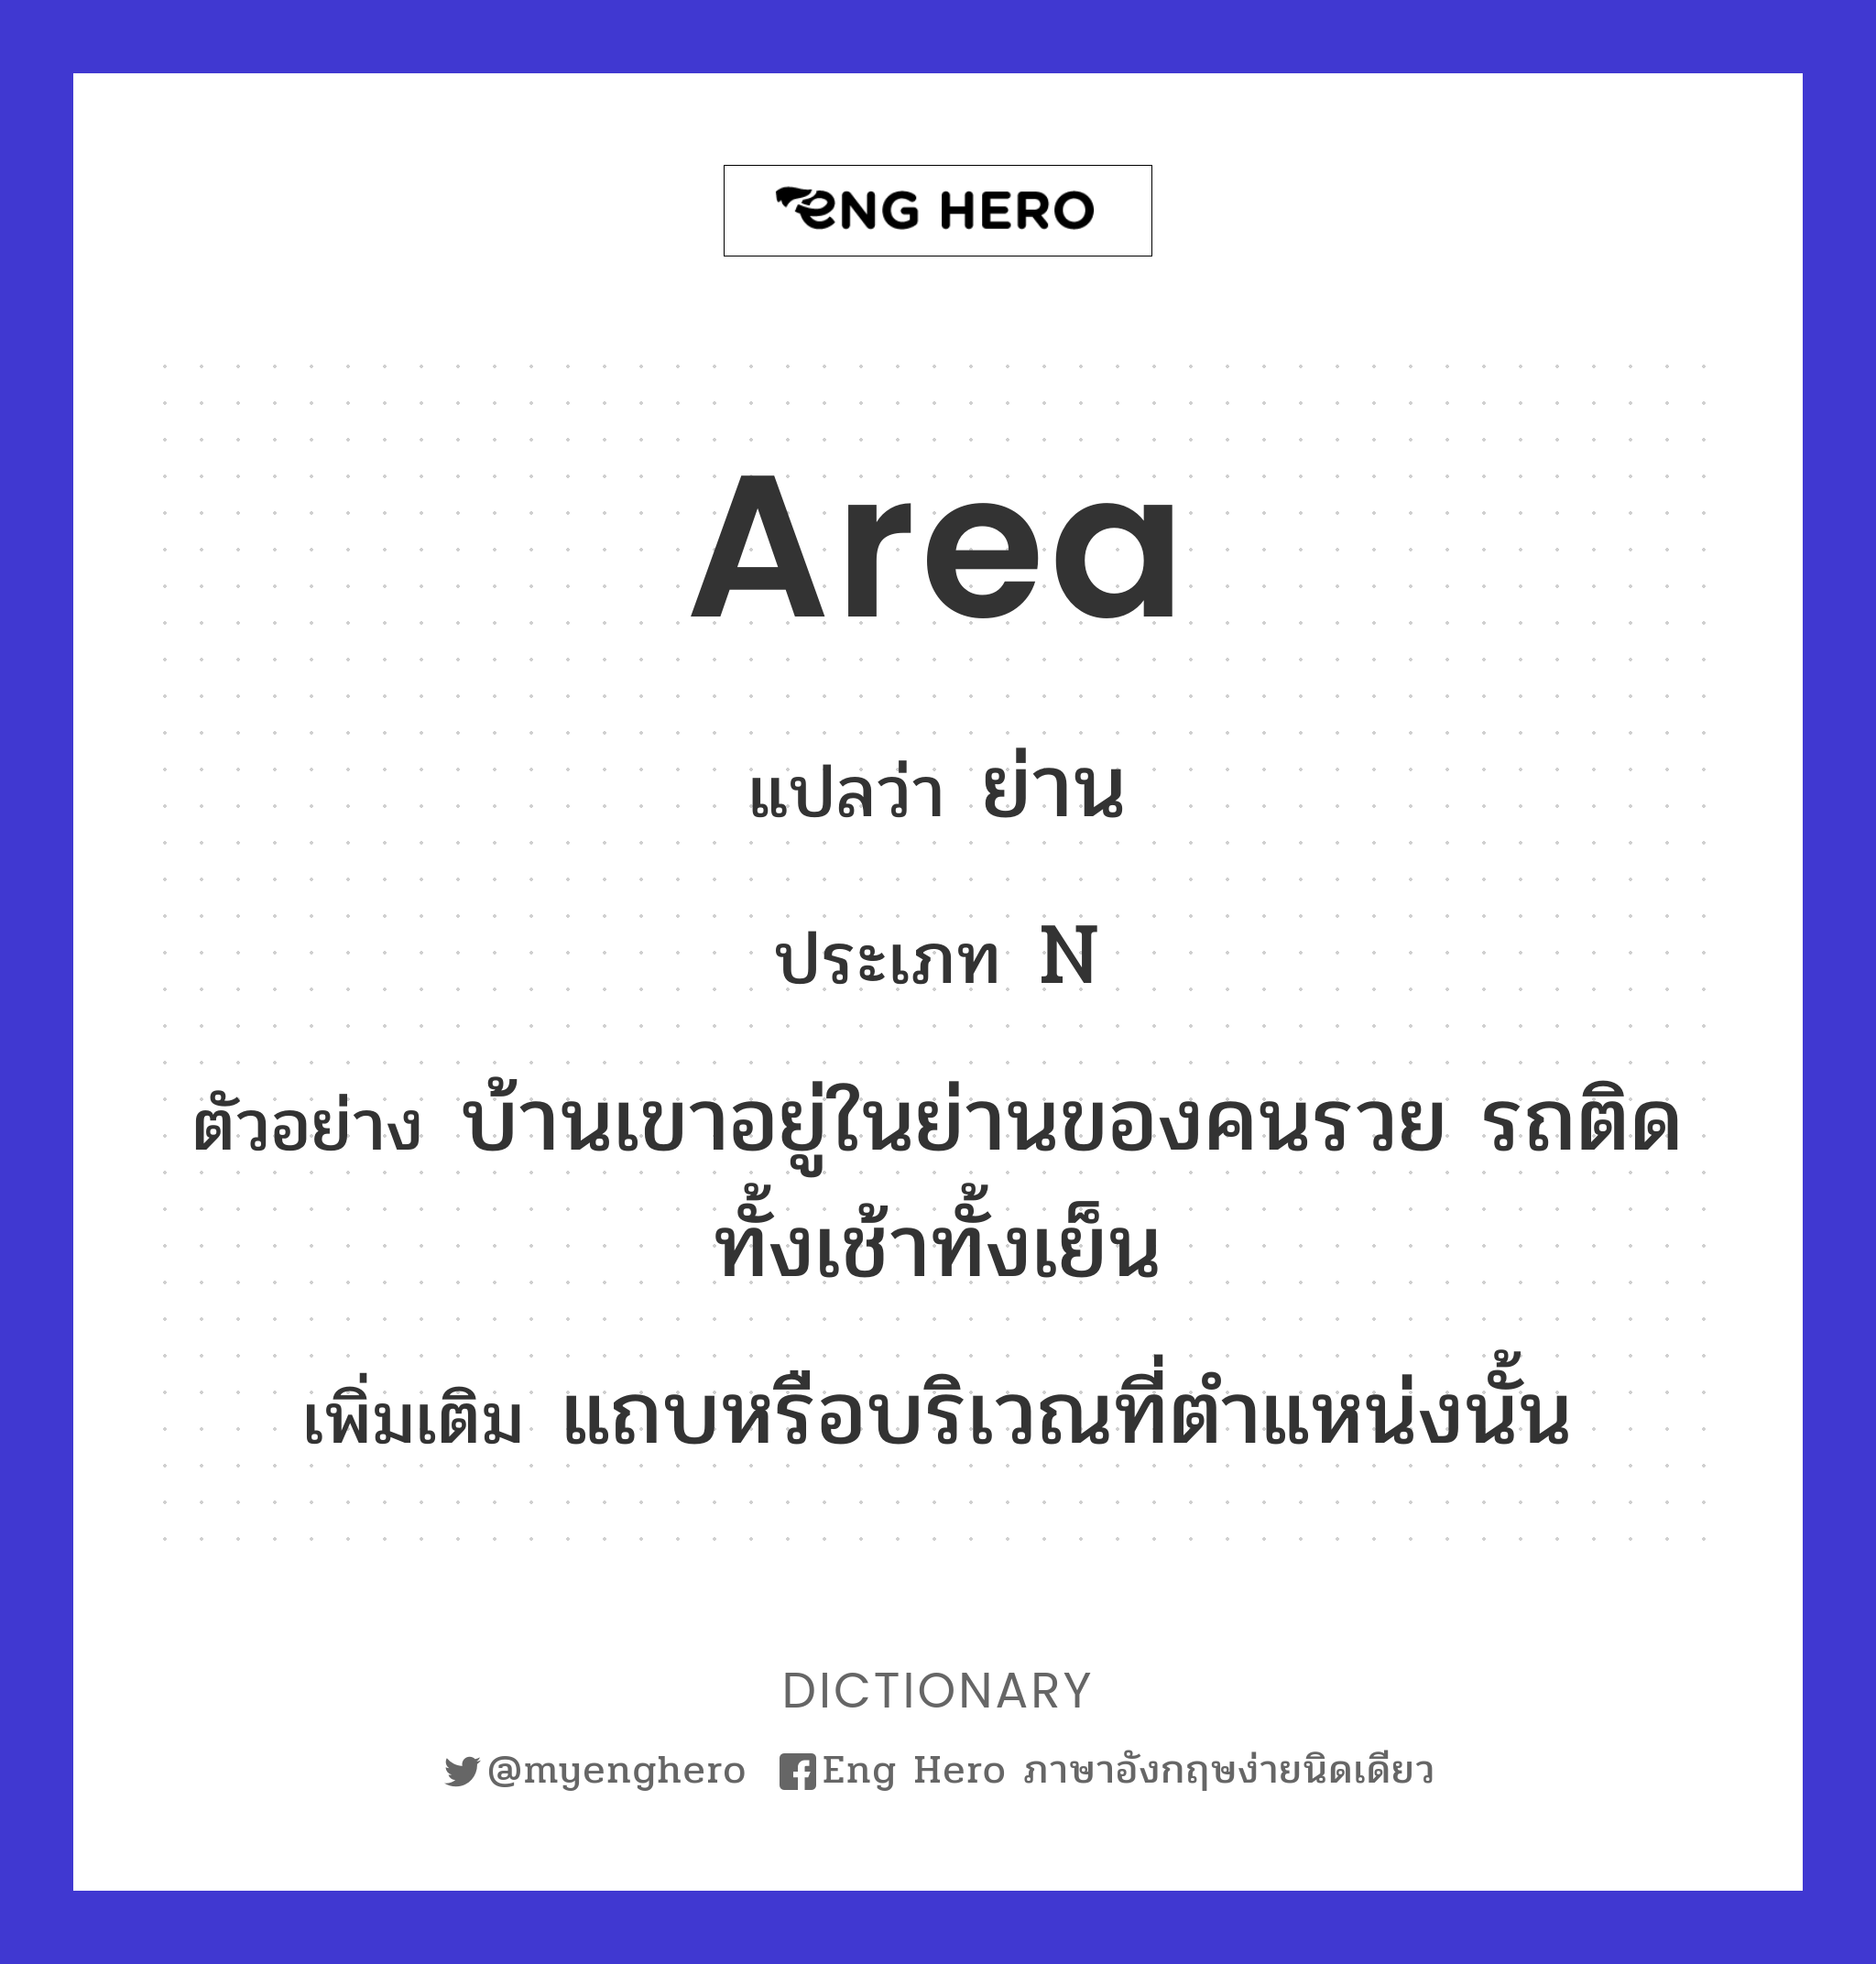 area